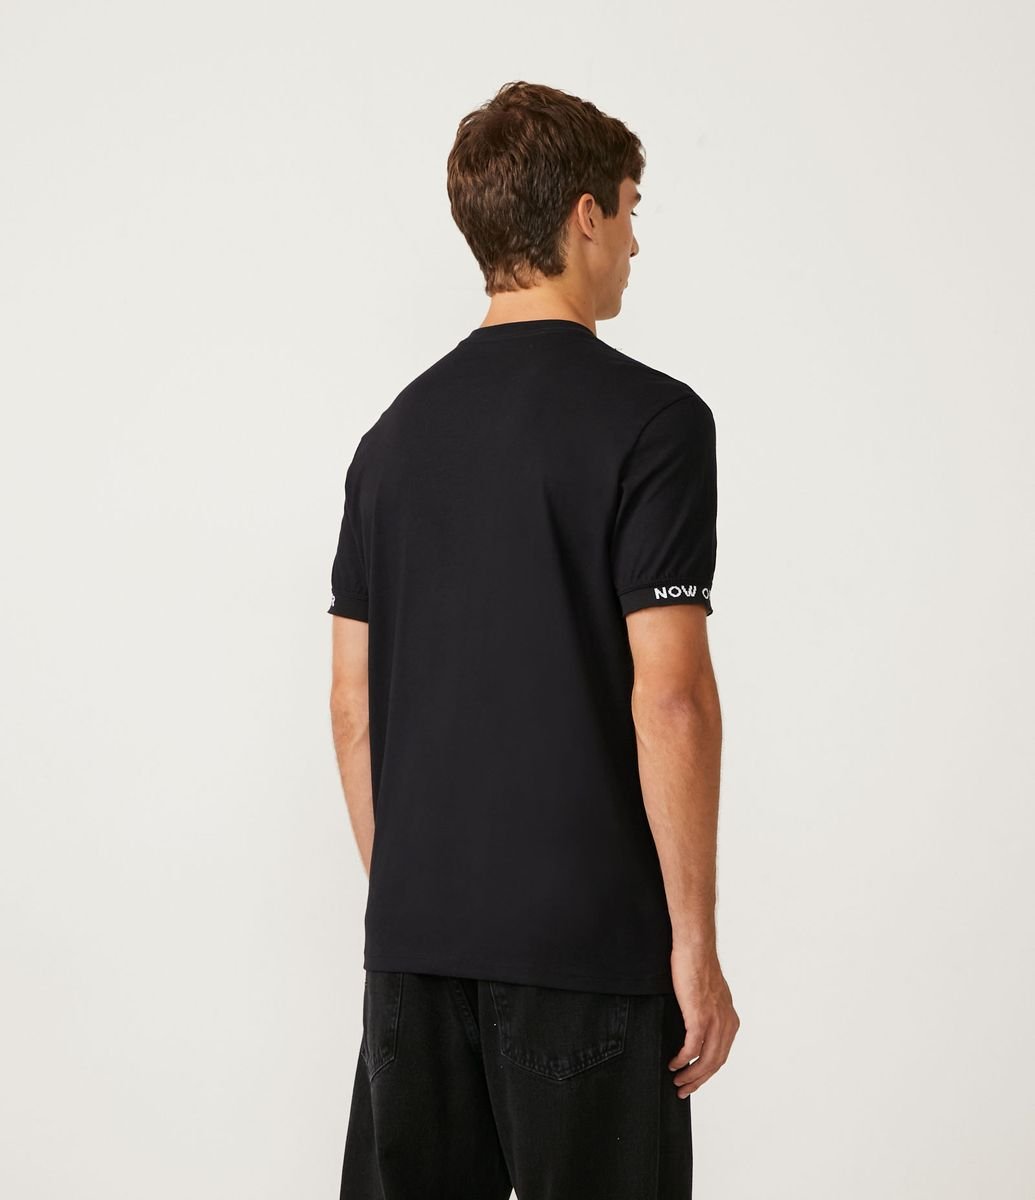 MYNKYLL Camisa masculina de ajuste regular para homens trabalho ao ar livre  esportes golfe tênis camiseta meias tamanho 13-15, Preto, M